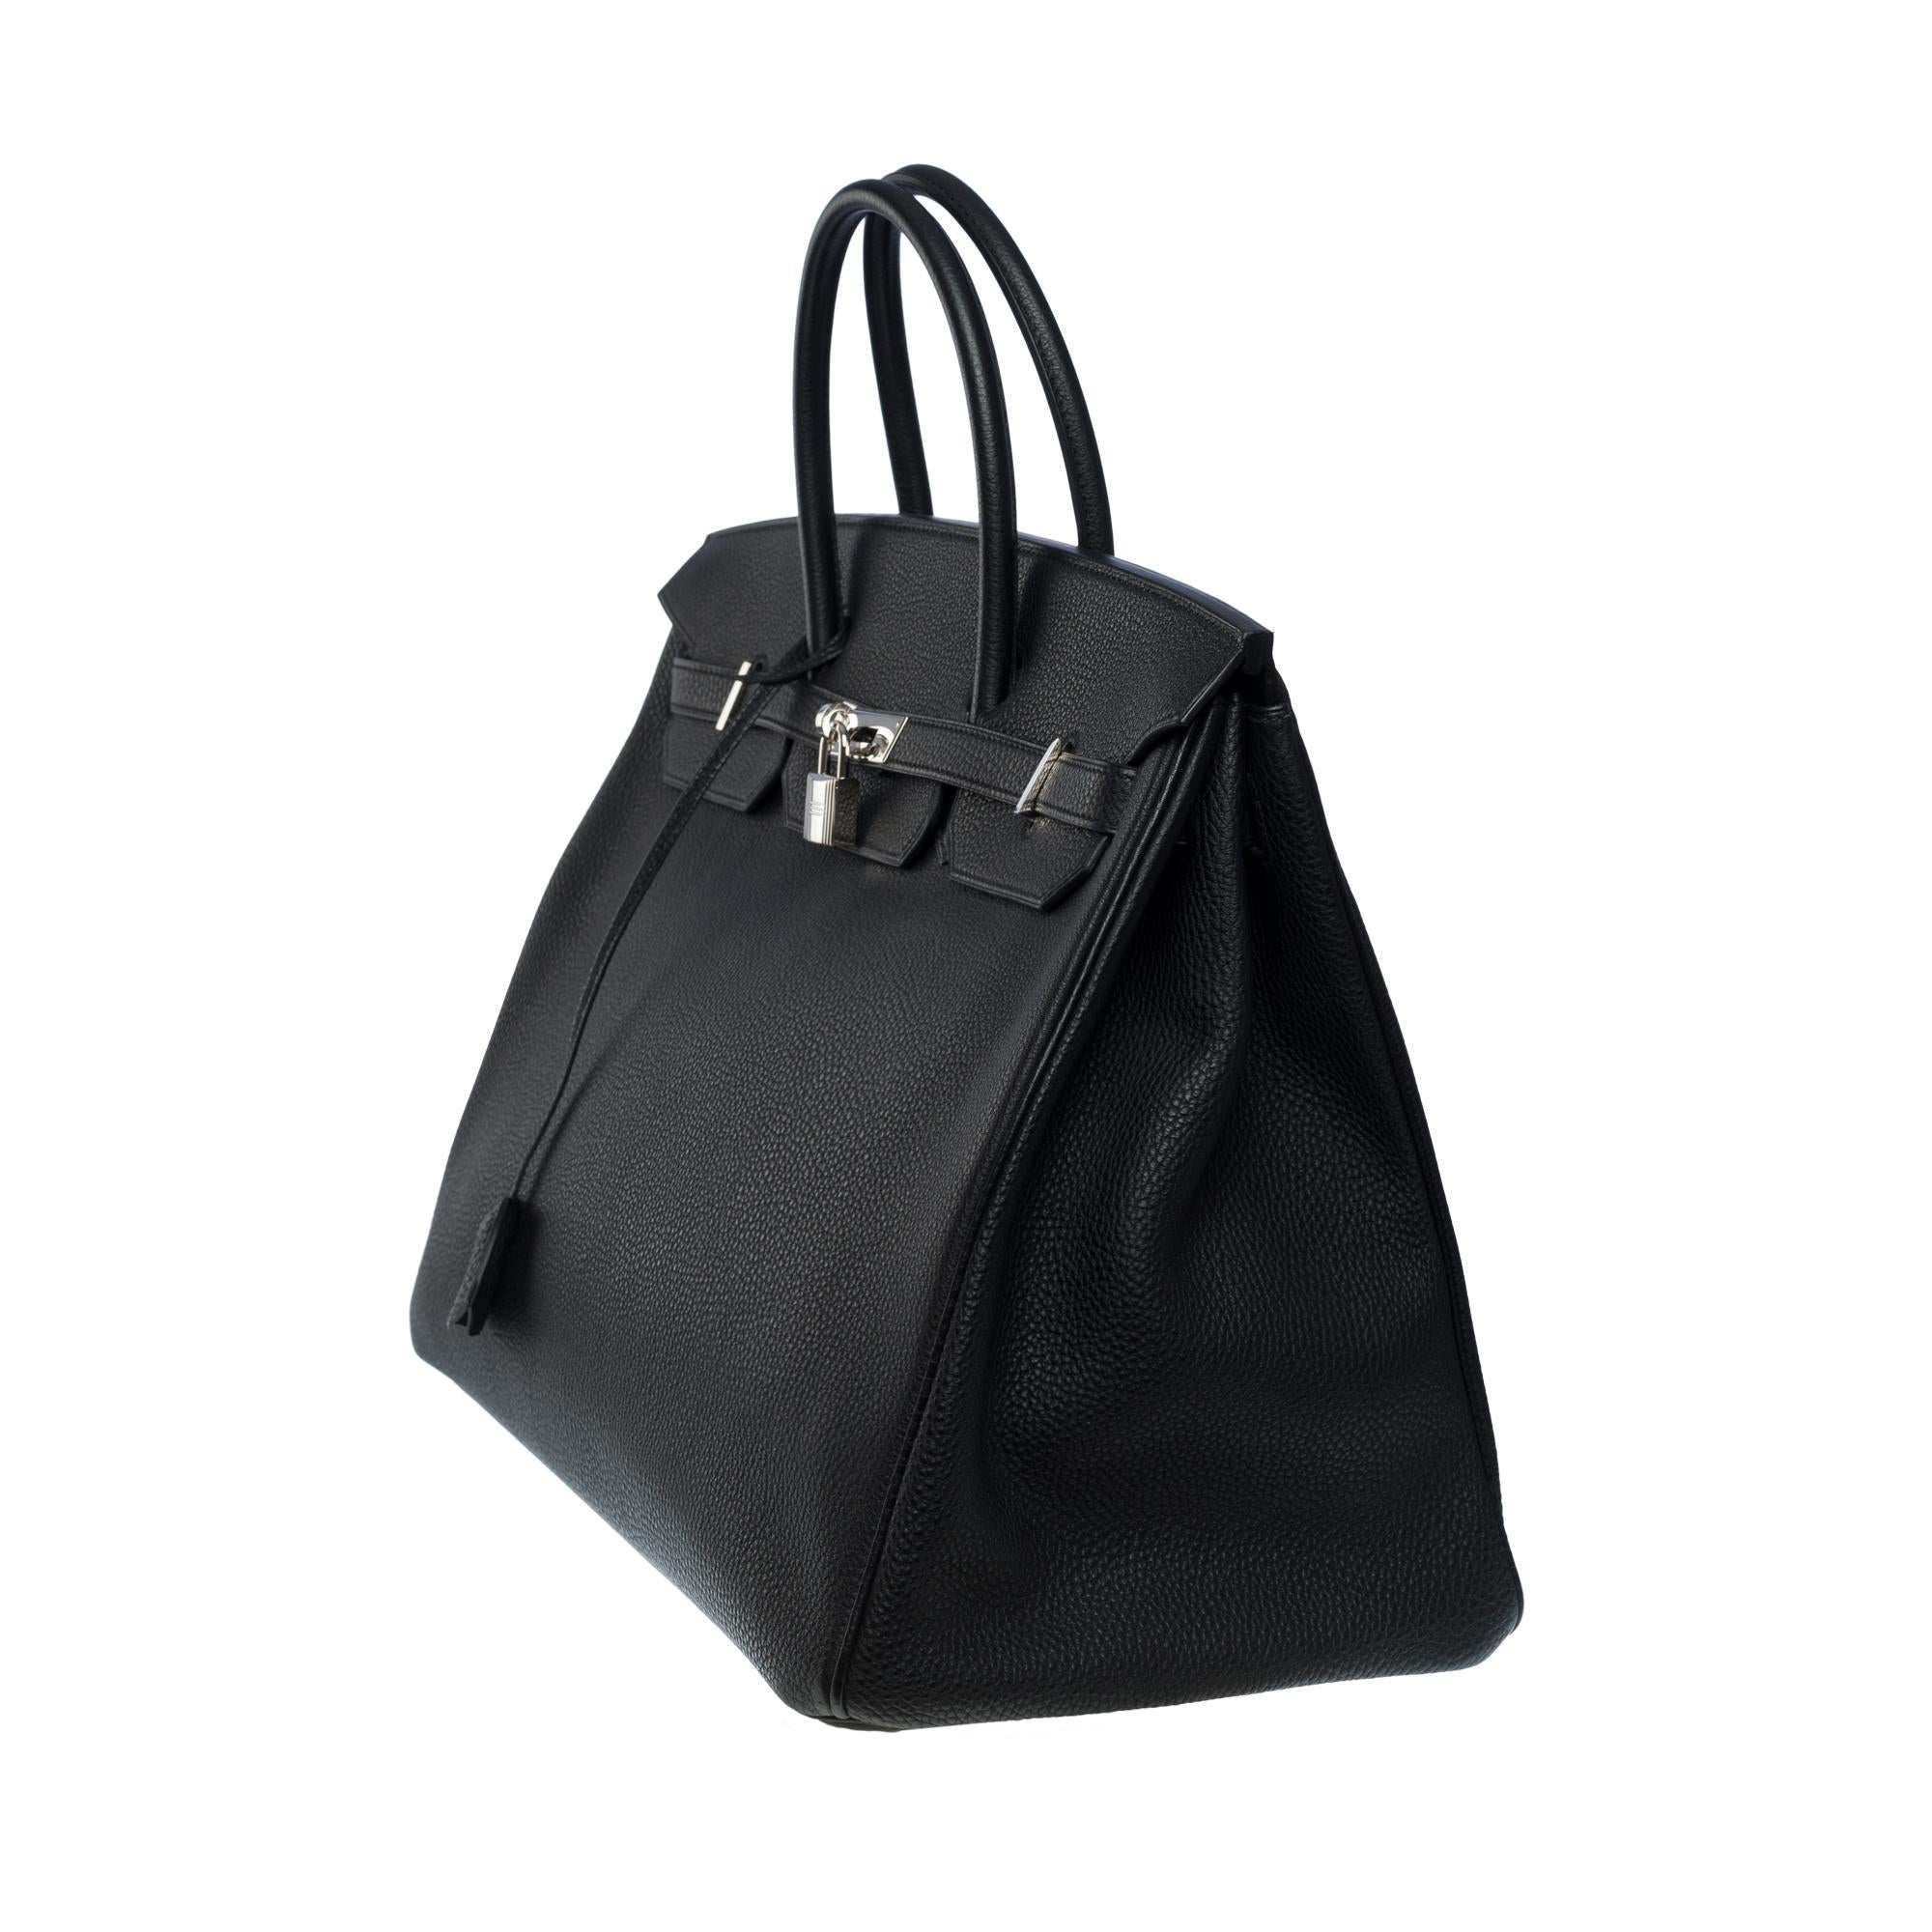 Stunning Hermes Birkin 40cm handbag in Black Togo leather, SHW In Excellent Condition In Paris, IDF